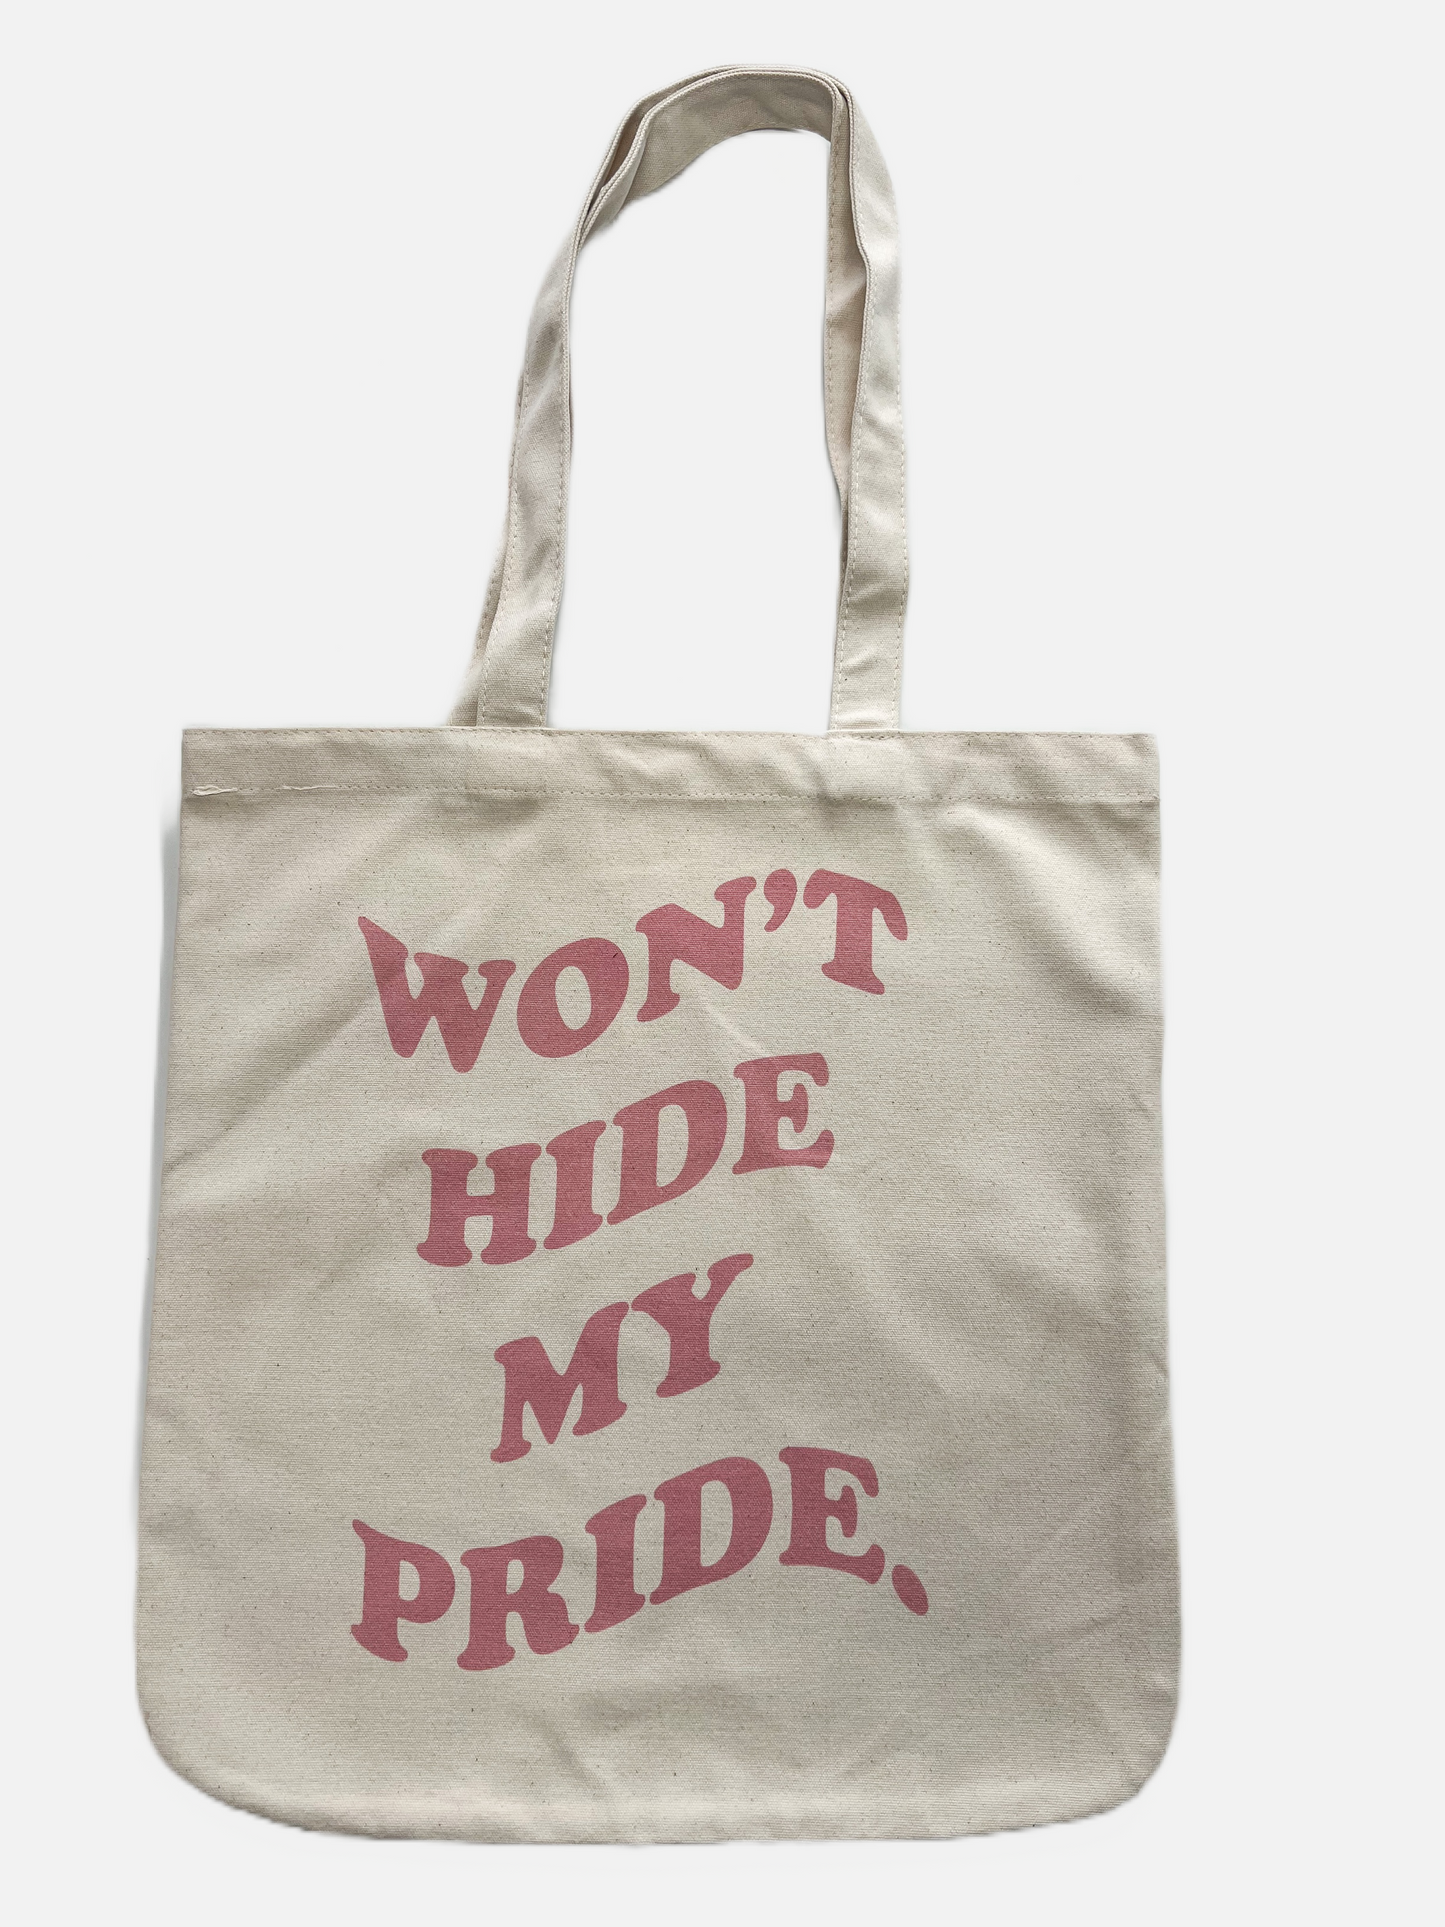 Won't hide my pride - Tote bag